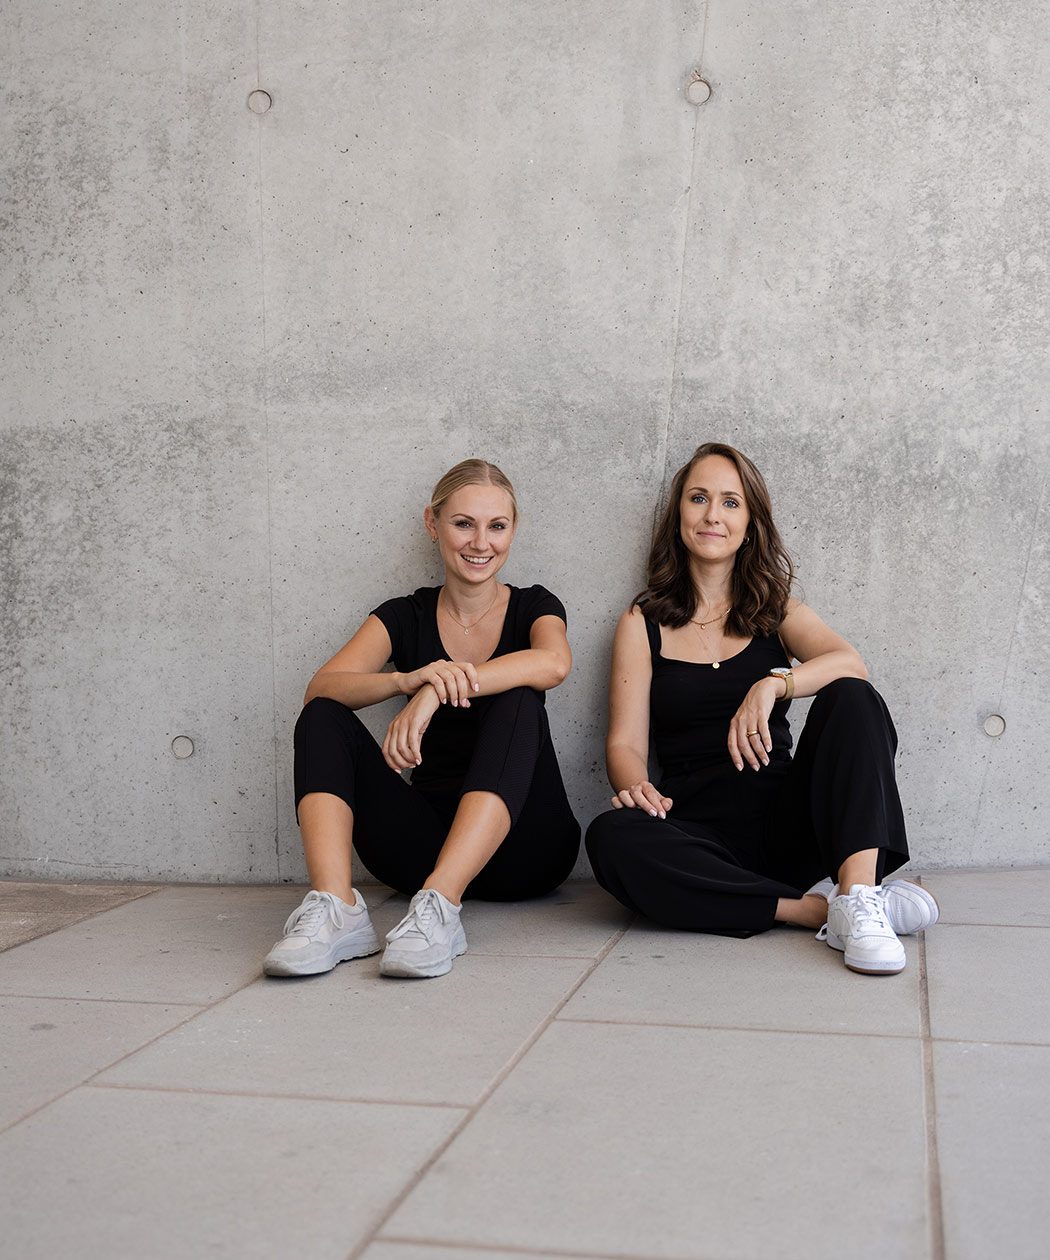 Die Gründerinnen Julia Kiener und Lisa Zöfgen von der Beratungsagentur Pommes al dente